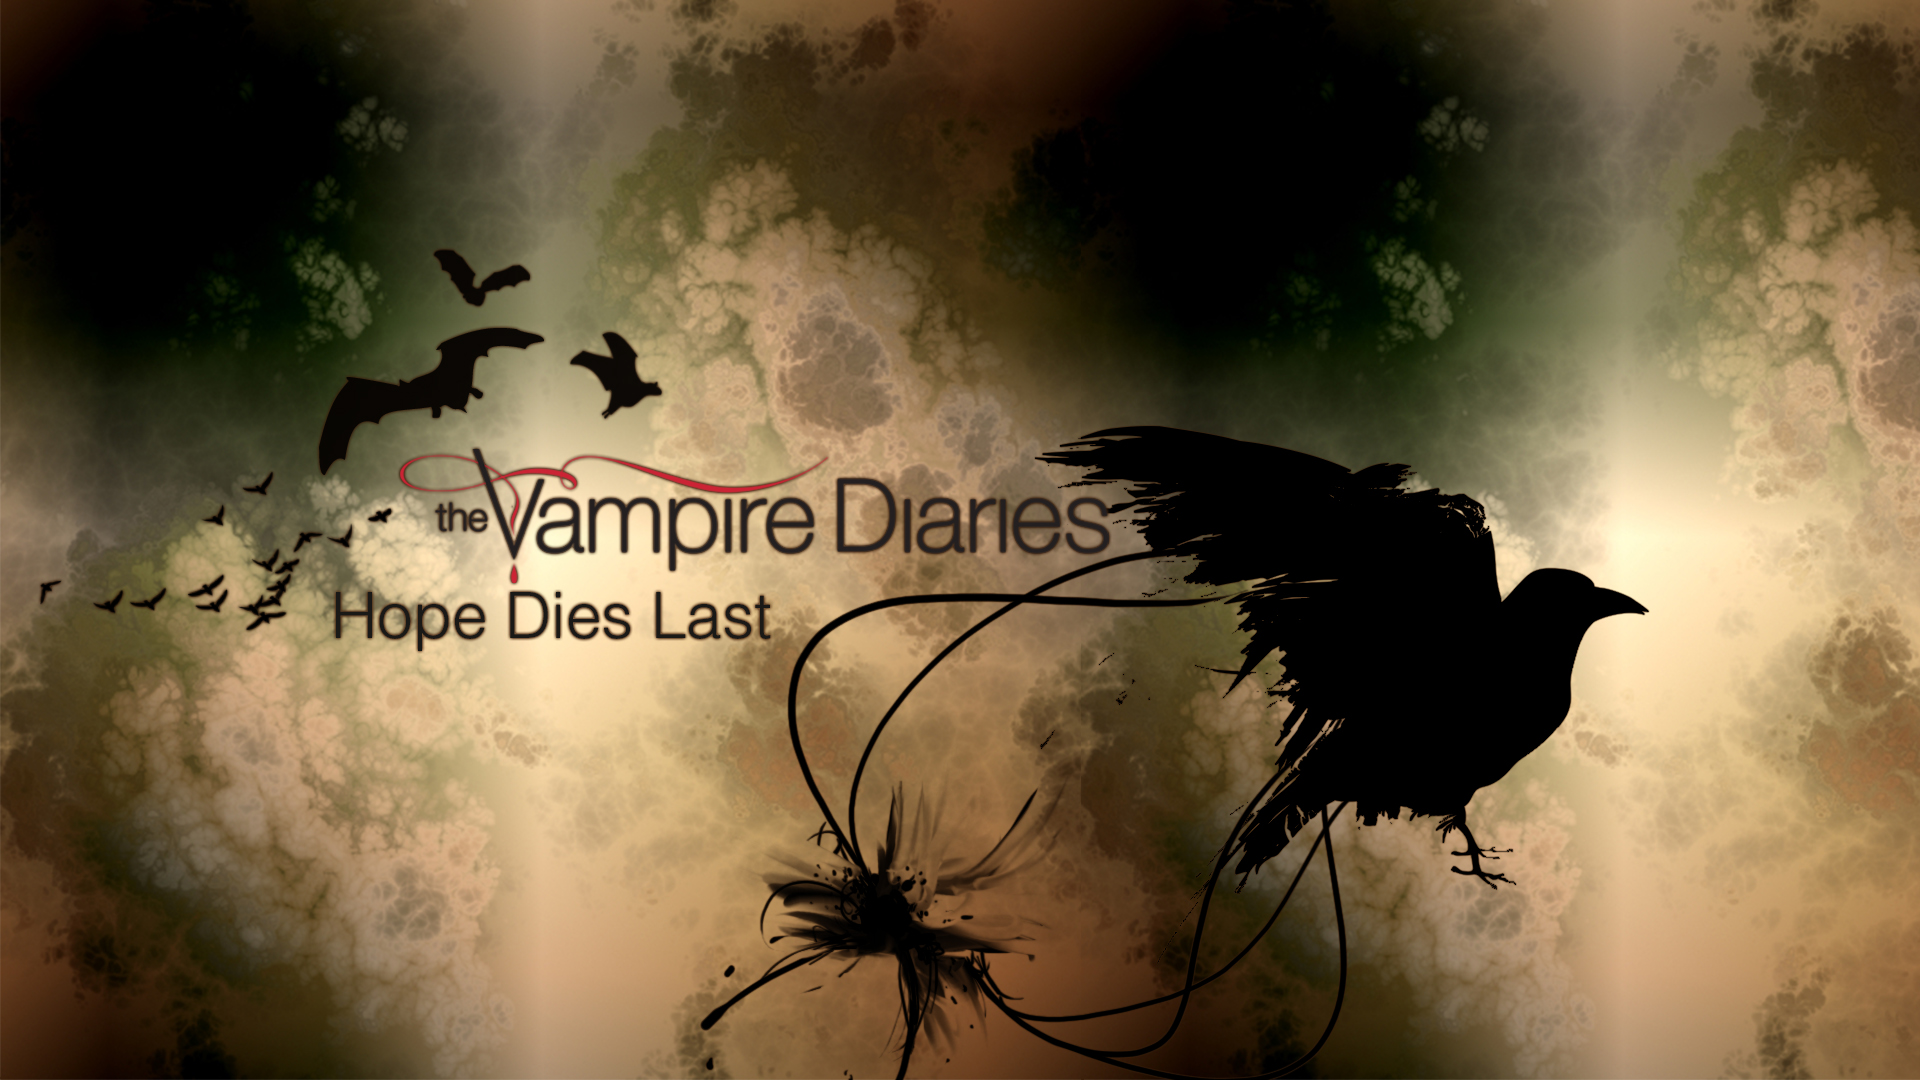 Vampire Diaries Image The Wallpaper Series